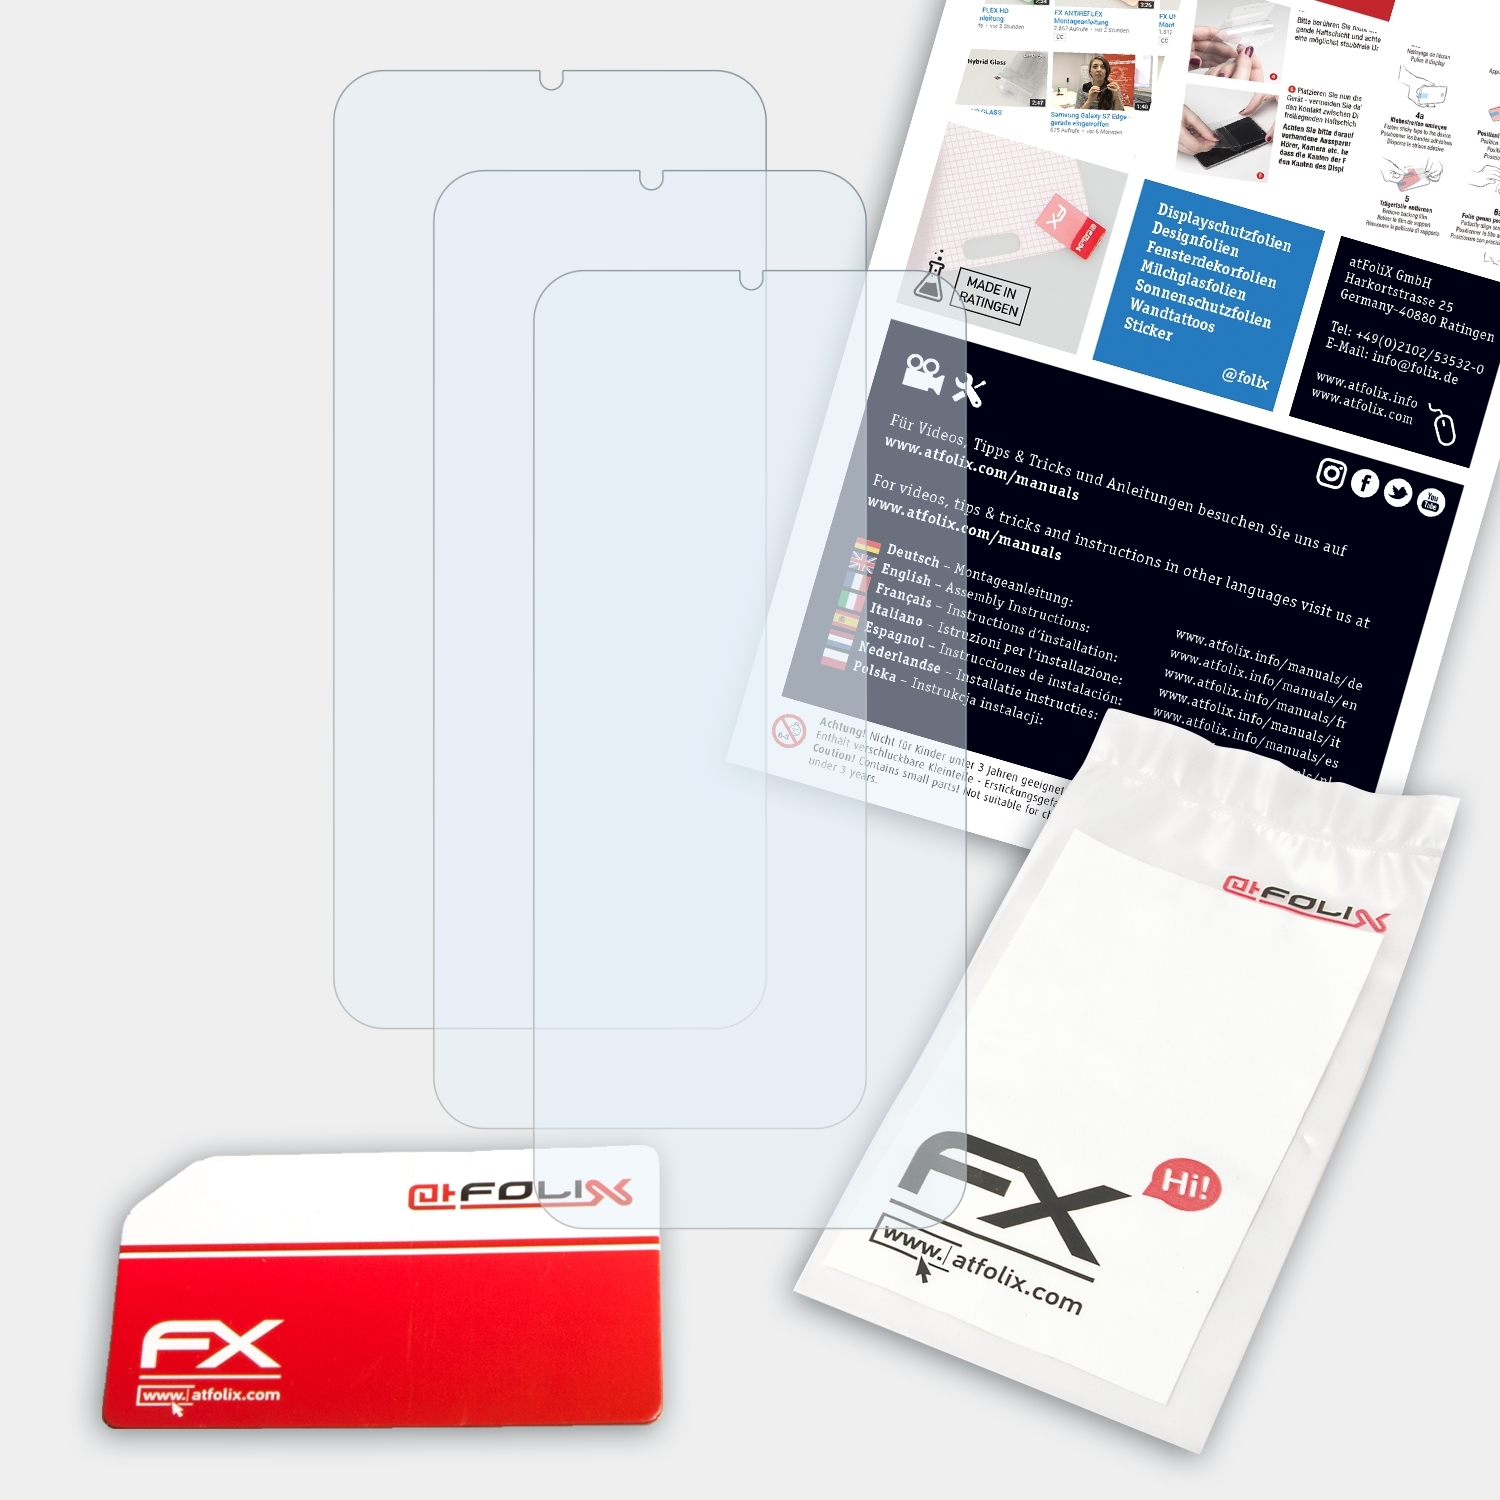 Oppo 3x ATFOLIX Displayschutz(für FX-Clear Realme XT)